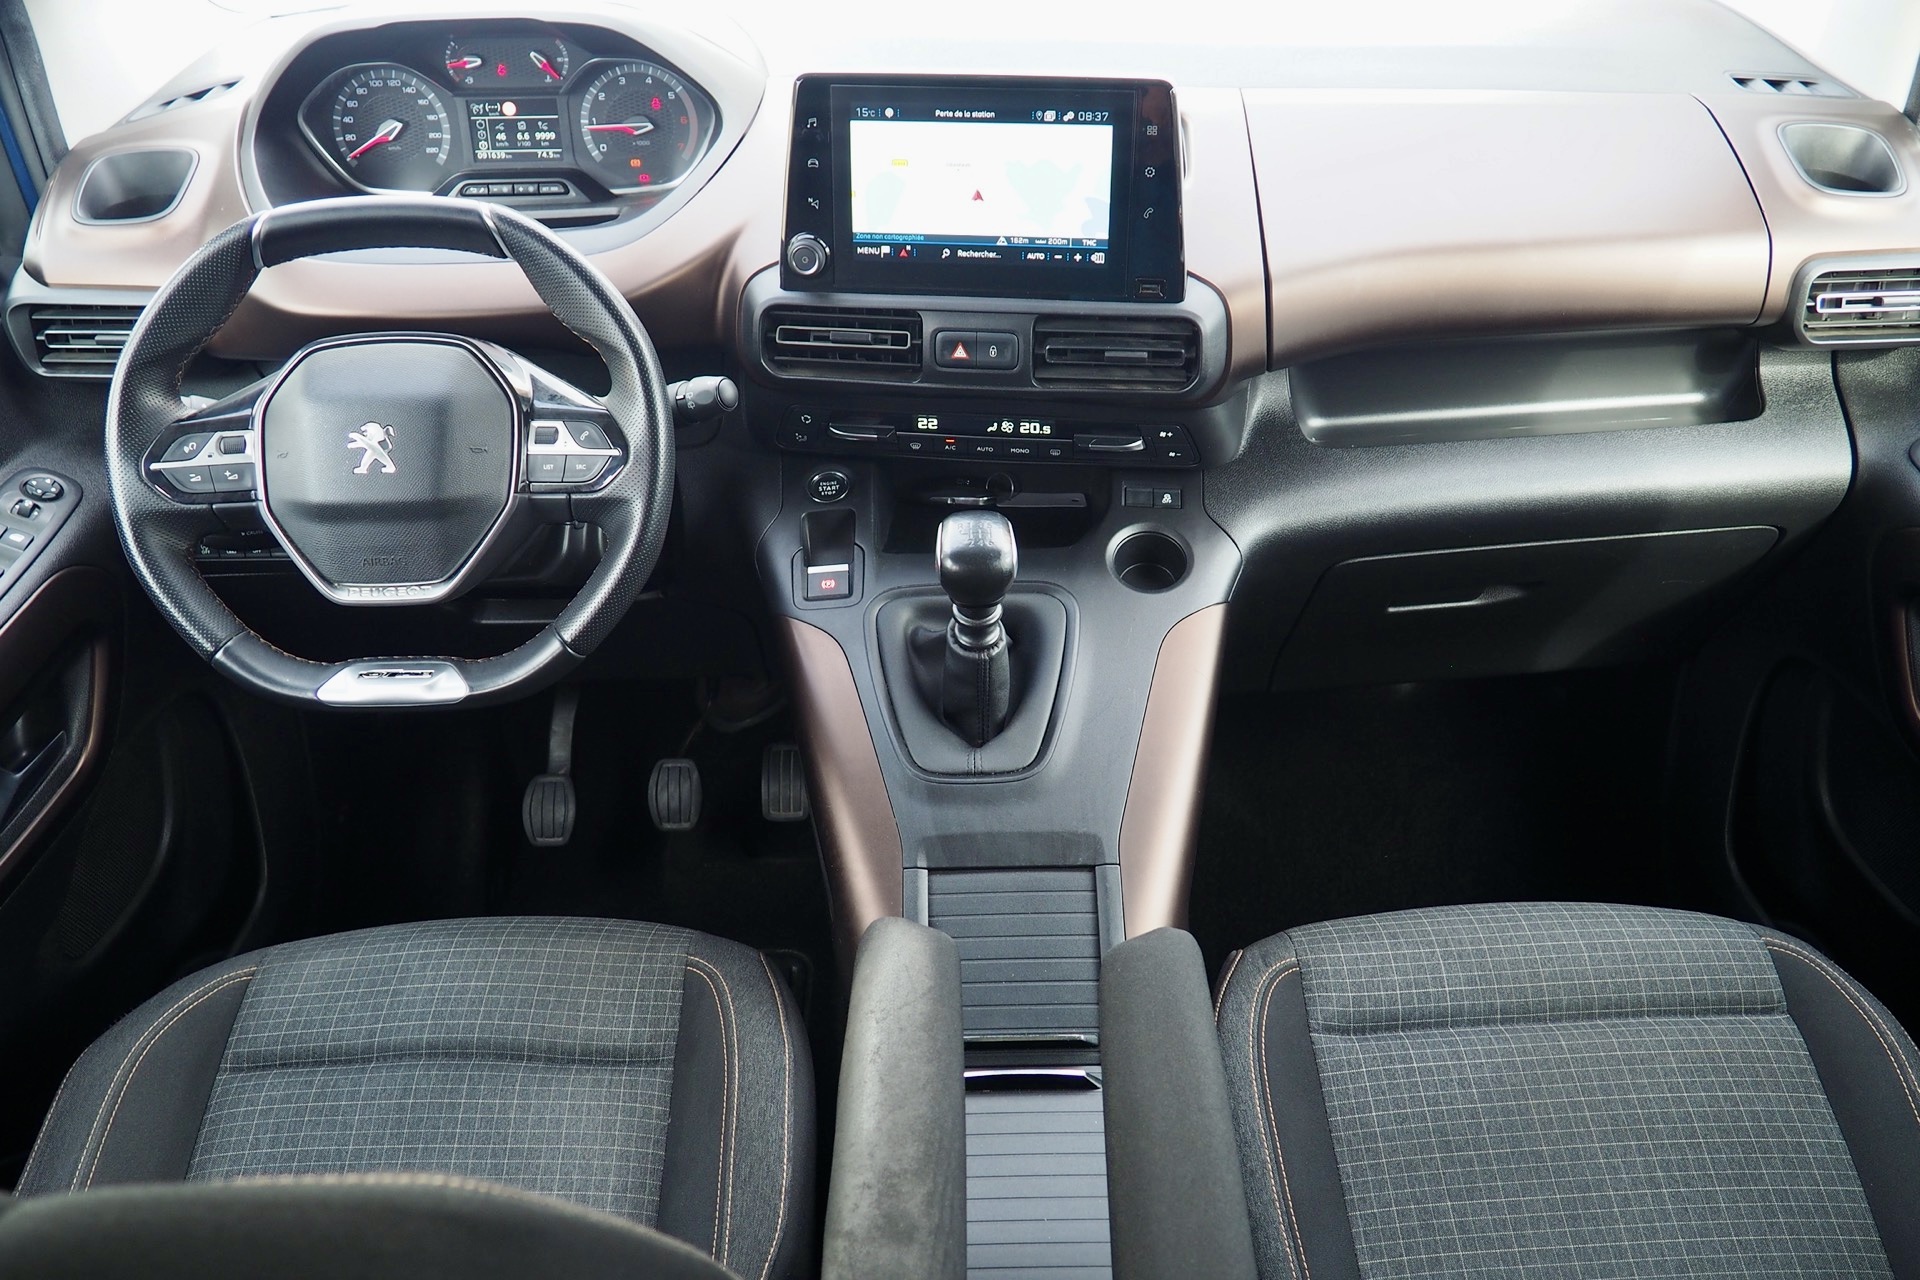 Peugeot Rifter Long XL Hdi 130 GT-Line, 7 places + Options, 1ère Main – Garantie 12 mois